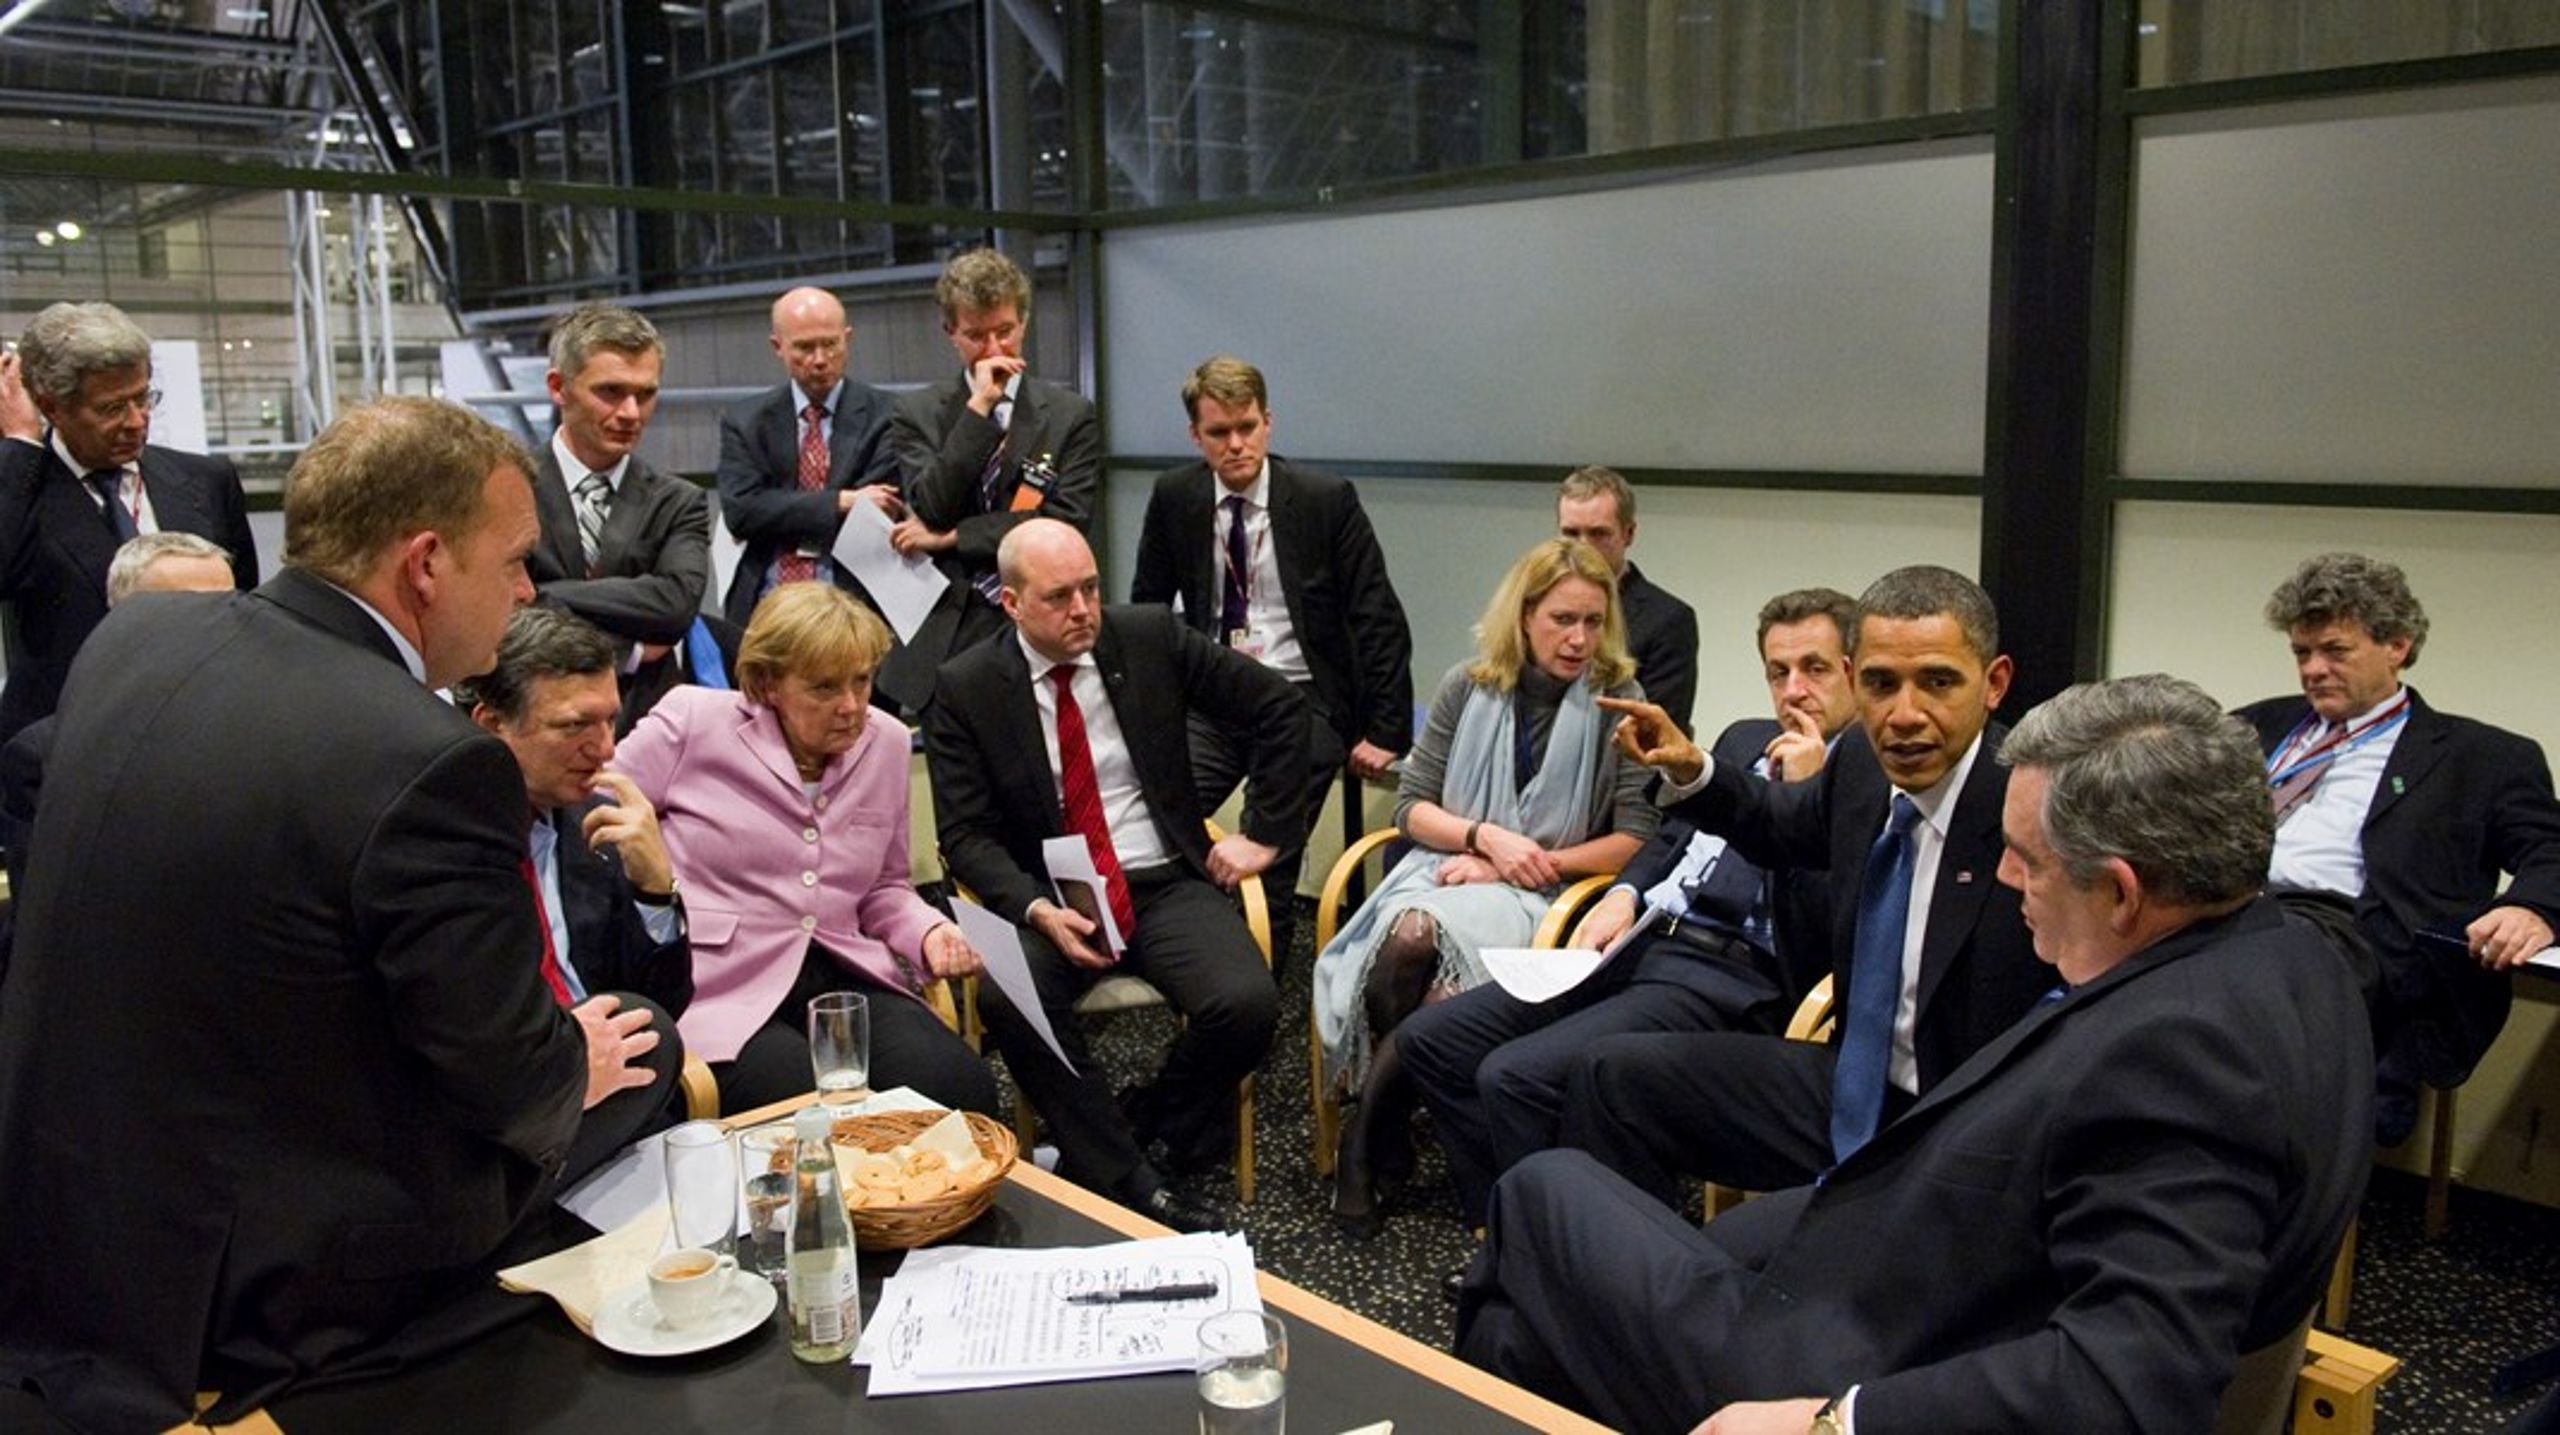 Gustaf
Lind har varit i den politiska hetluften tidigare. Här sittandes
bakom dåvarande statsminister Fredrik Reinfeldt vid COP15 i Köpenhamn.<br>